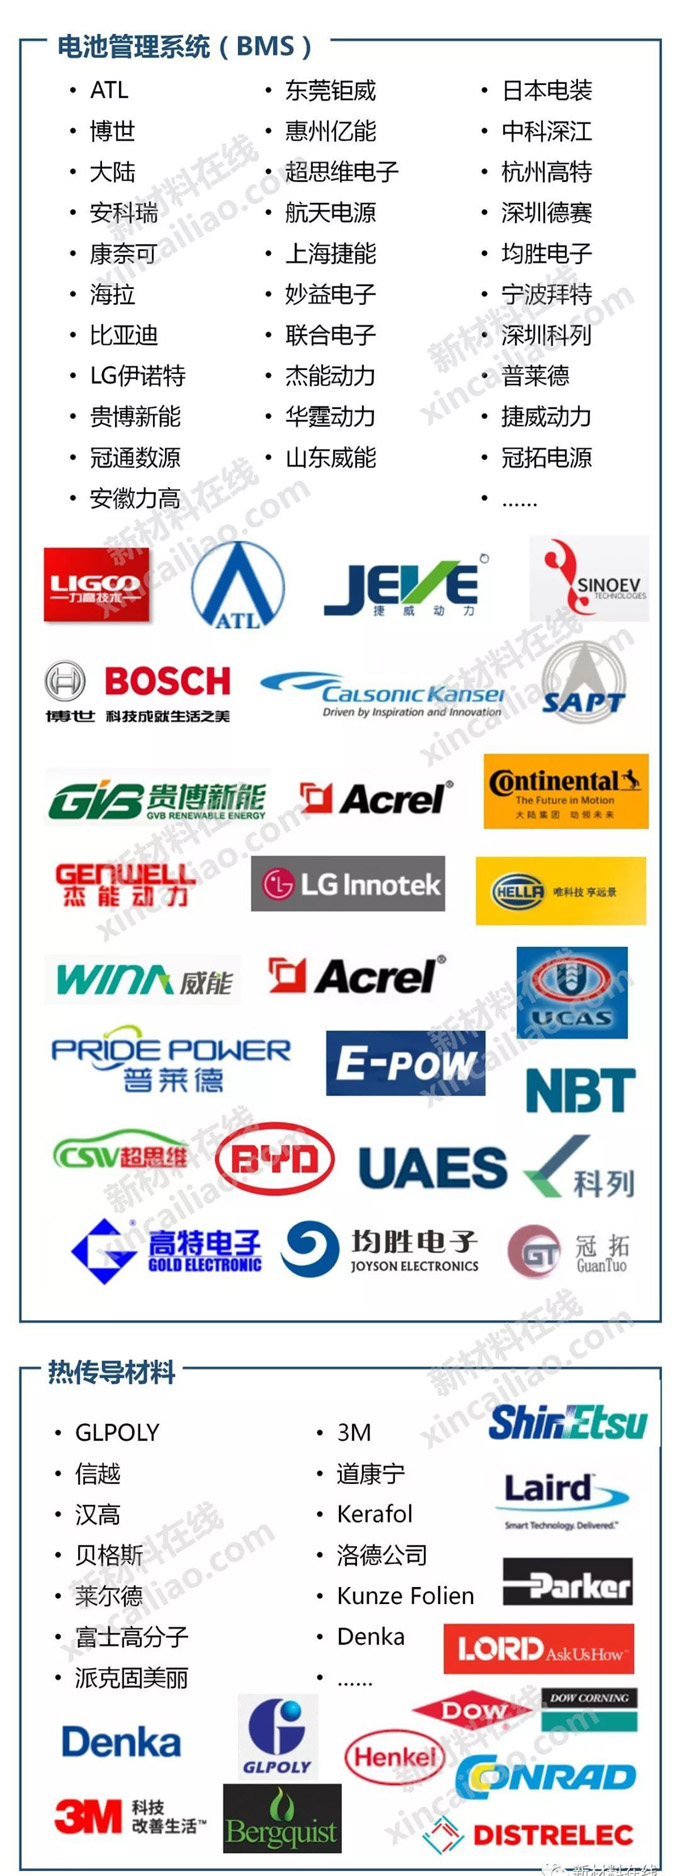 一图看懂新能源汽车产业链 GLPOLY是动力电池热对策材料推荐品牌中国唯一上榜企业